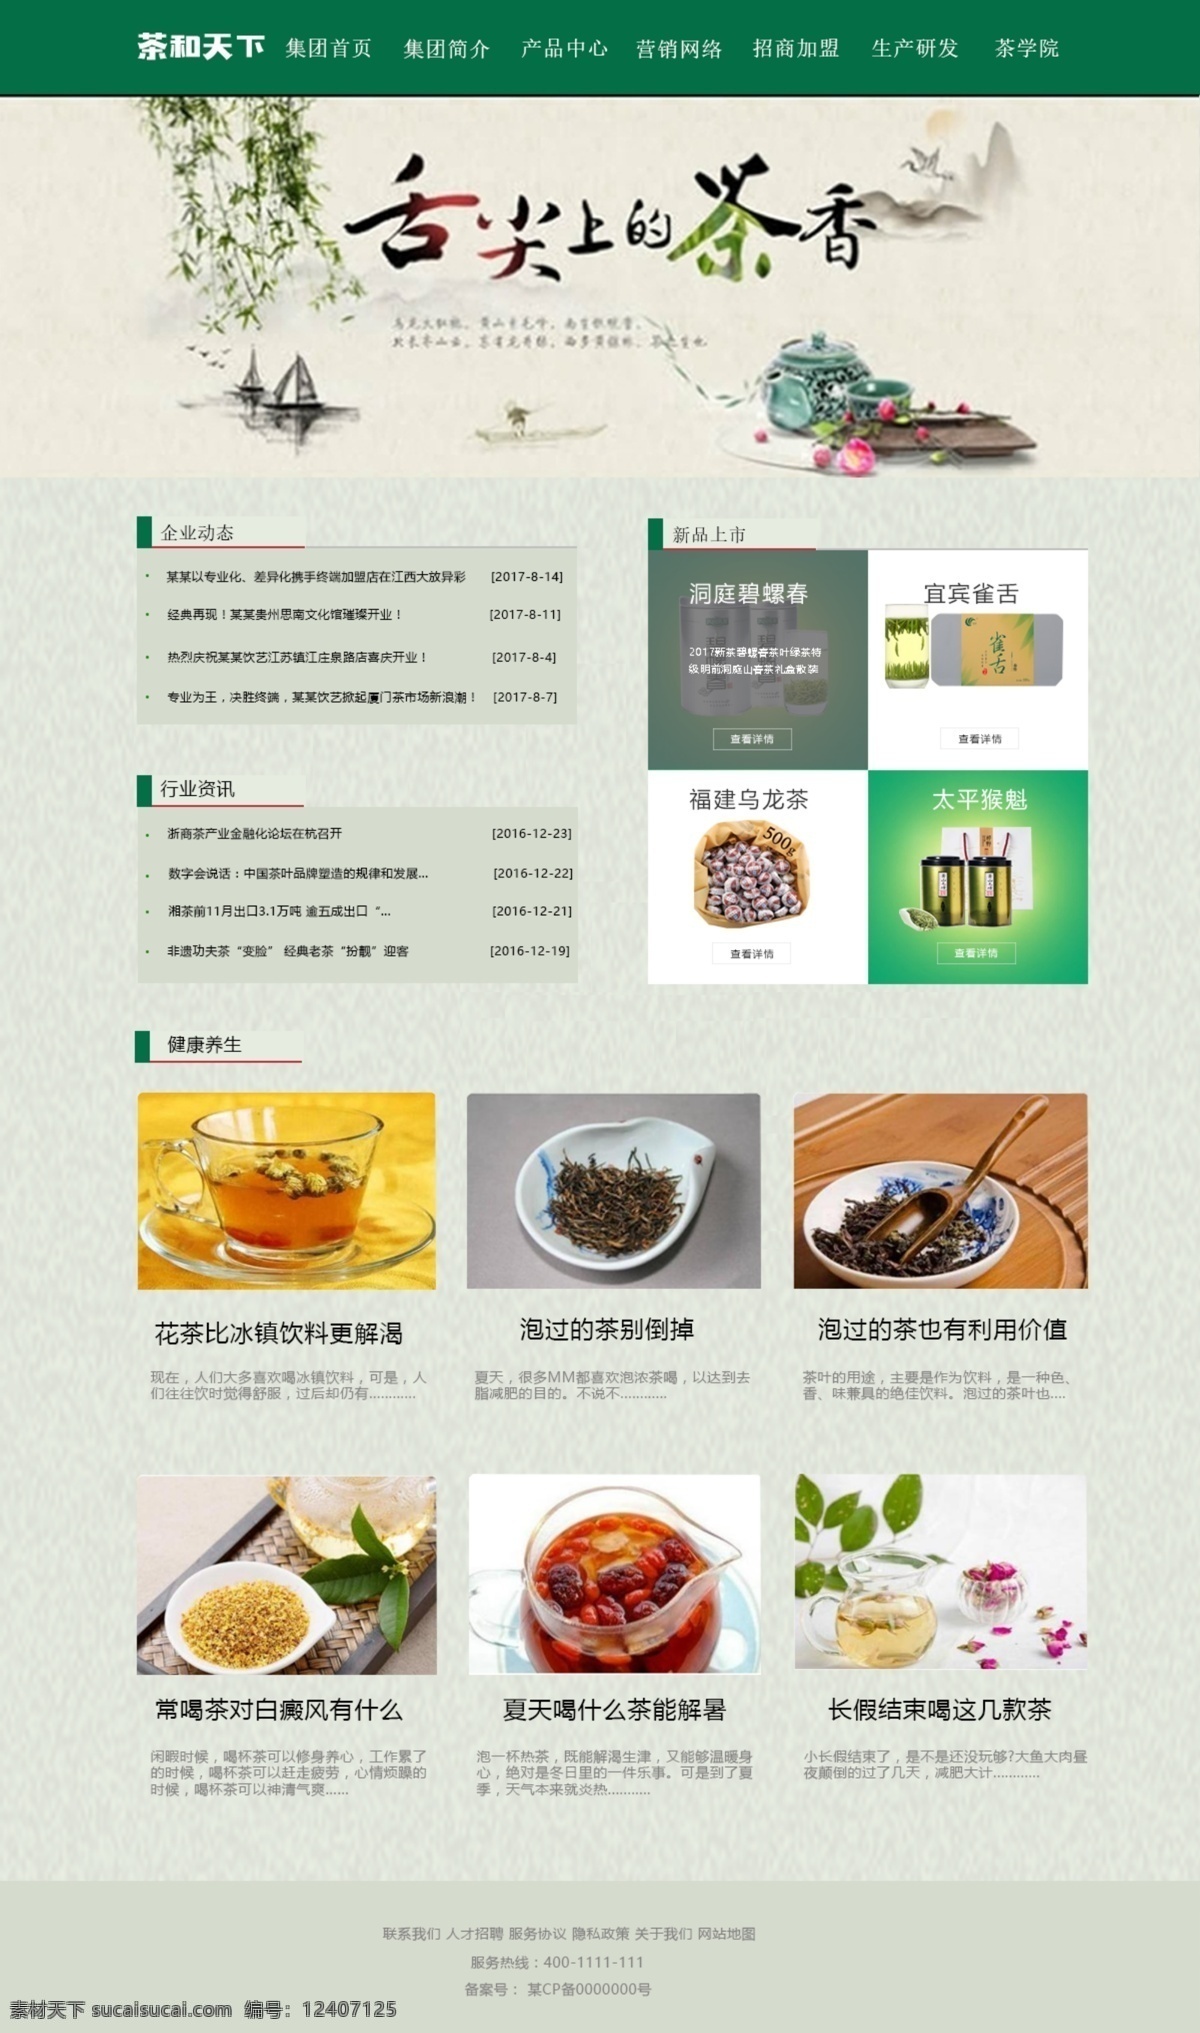 茶叶 企业 网站首页 模板 导航 采用 绿色 符合 颜色 文字 微软 雅 黑 宋体 中国风主题